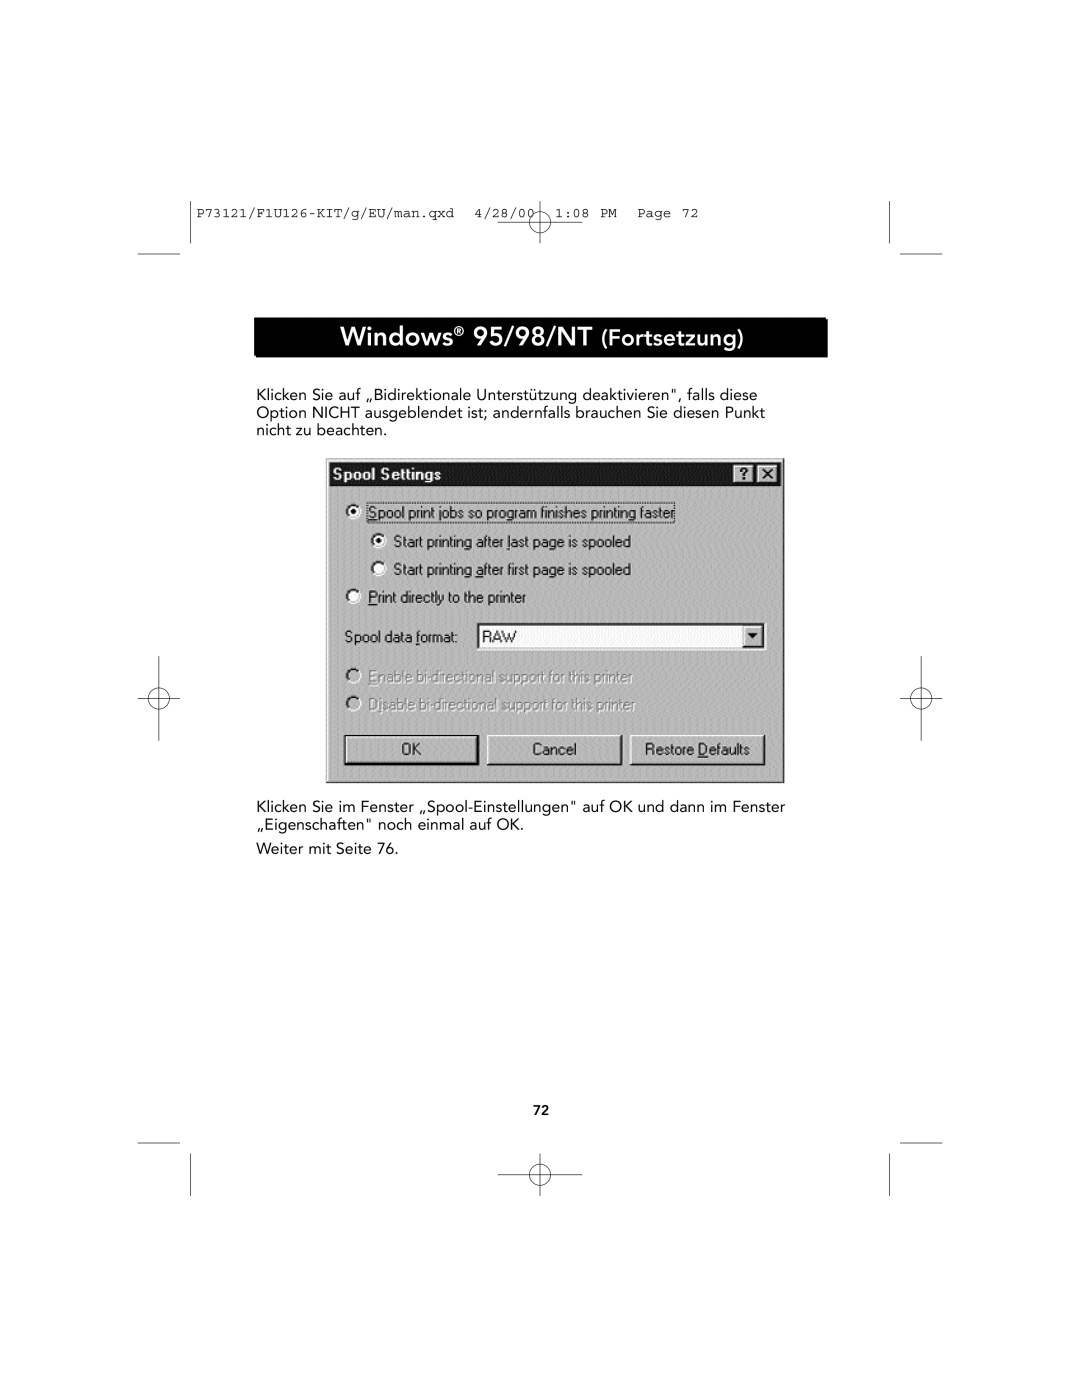 Belkin P73121, F1U126-KIT user manual Windows 95/98/NT Fortsetzung, Weiter mit Seite 